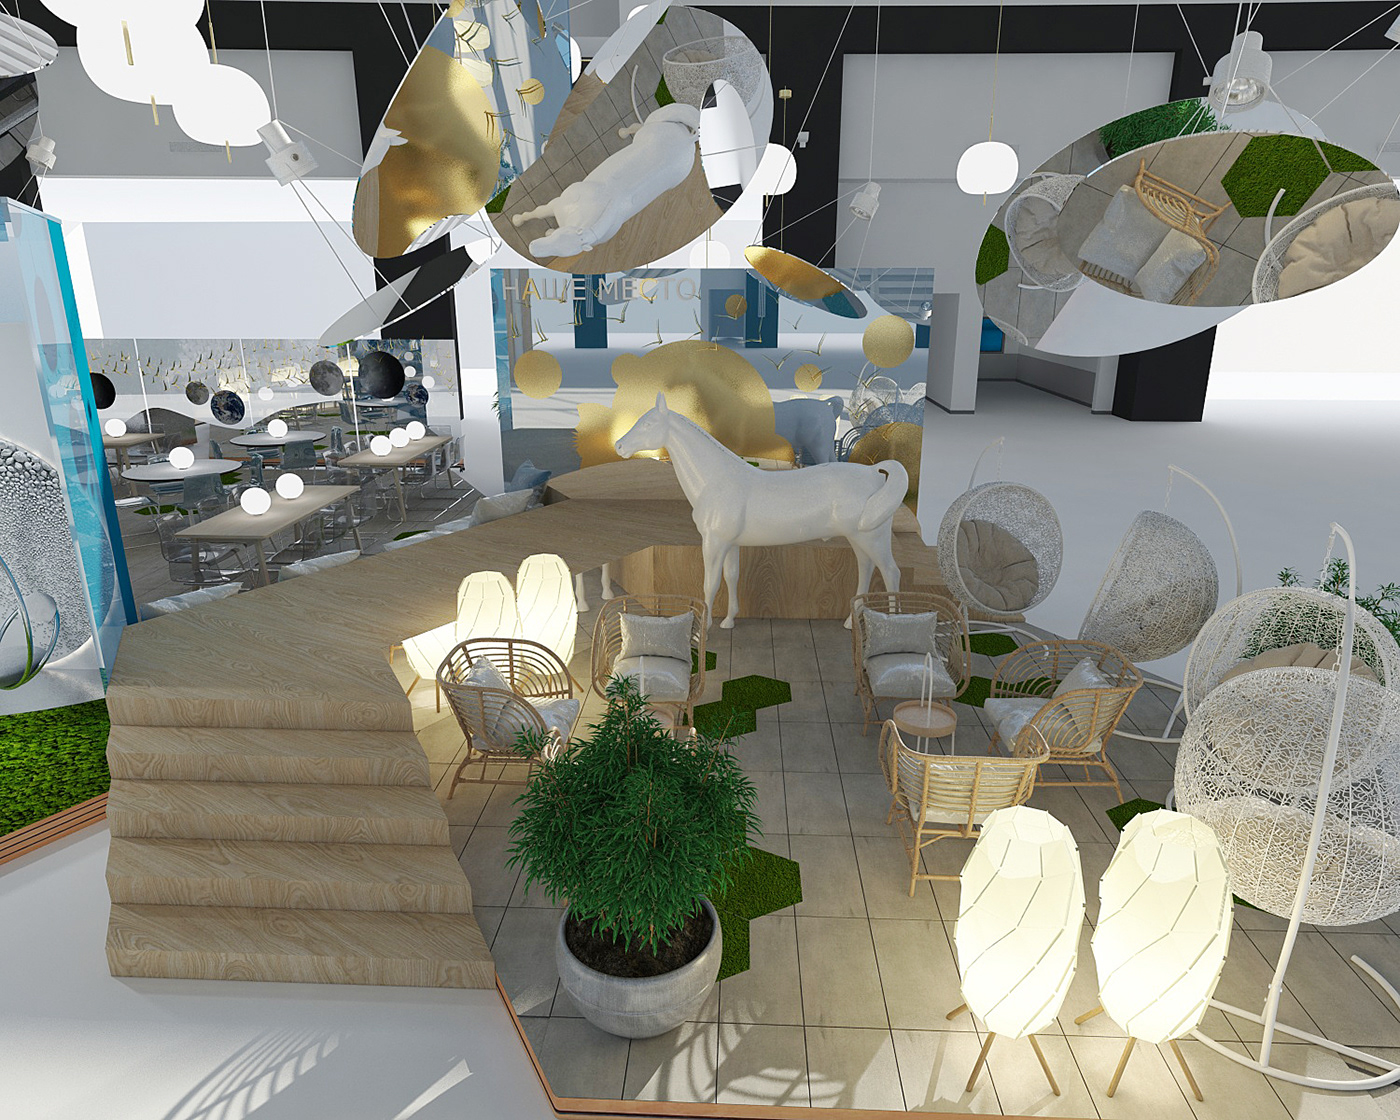 3D 3dmodel architecture interior design  INTERIOR RENDERING Public Interior Render visualization